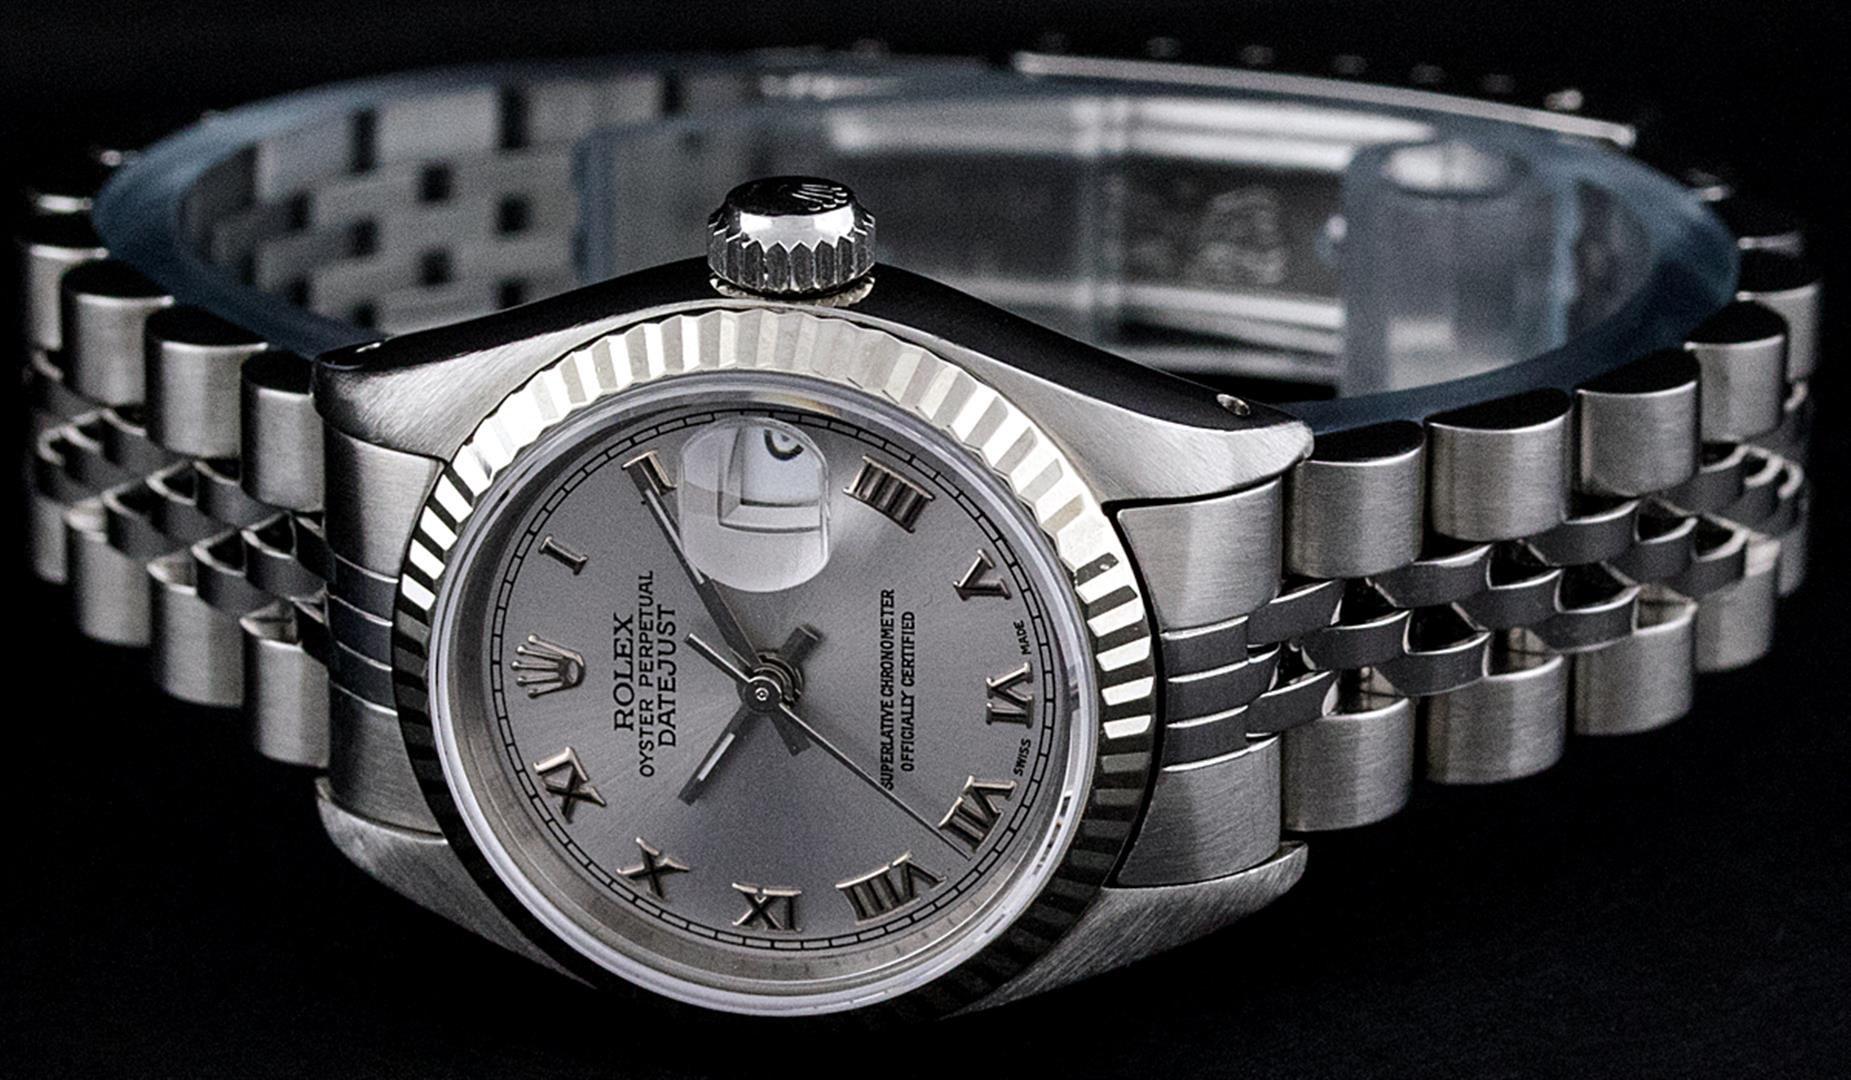 Ladies Rolex Stainless Steel Quickset Slate Grey Roman Datejust Wristwatch